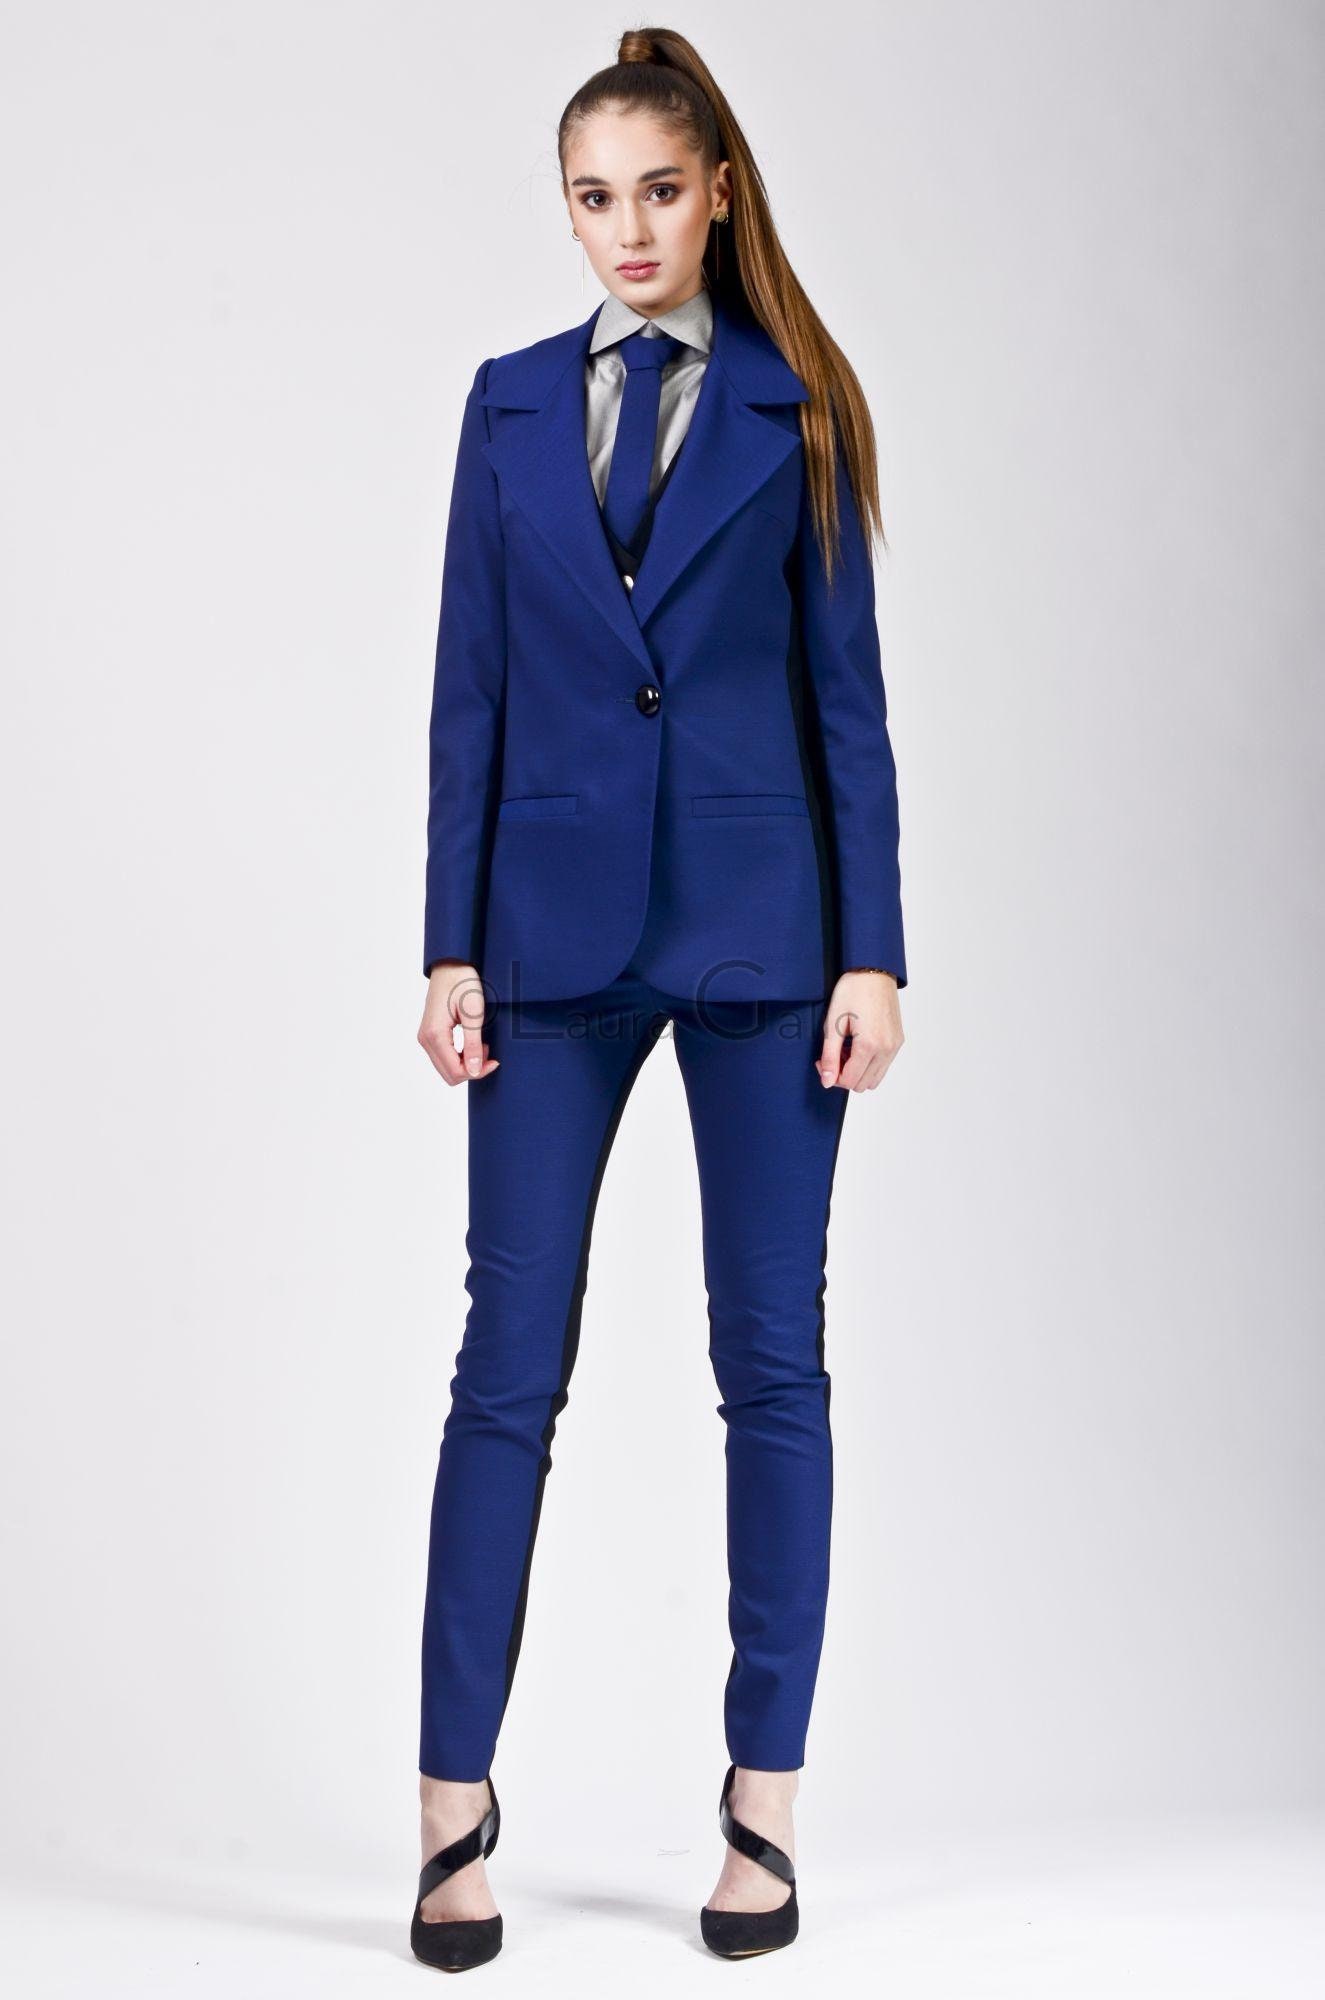  WDBBY Pantalones de 3 piezas para mujer, traje de oficina,  negocios, trabajo, chaqueta de vestir para mujer, chaleco (color: A, talla:  XL código) : Ropa, Zapatos y Joyería